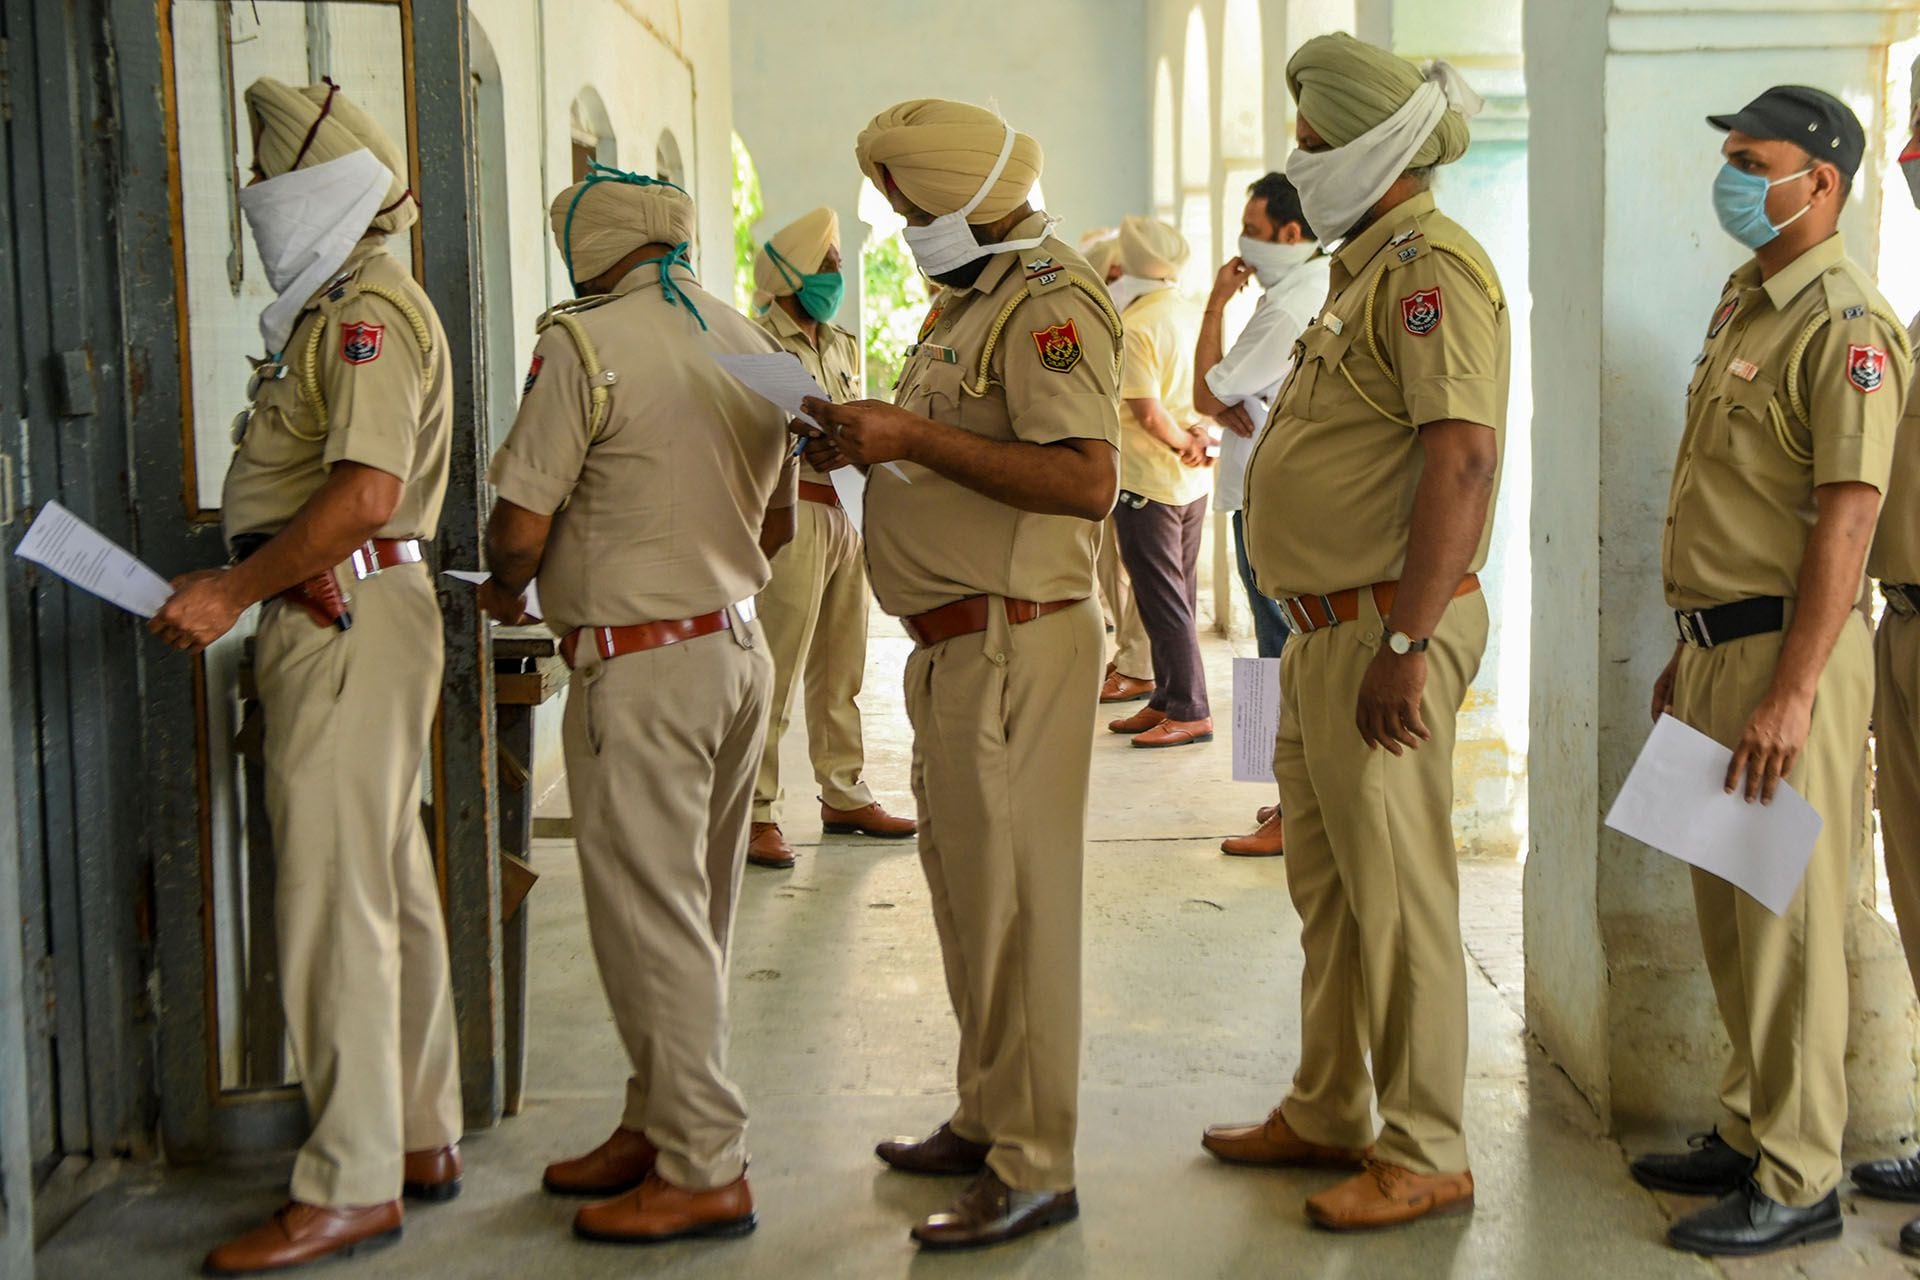 El personal de la Policía hace cola mientras espera a ser revisado por los trabajadores de la salud en un hospital en Amritsar el 22 de abril de 2020. (Foto de NARINDER NANU / AFP)